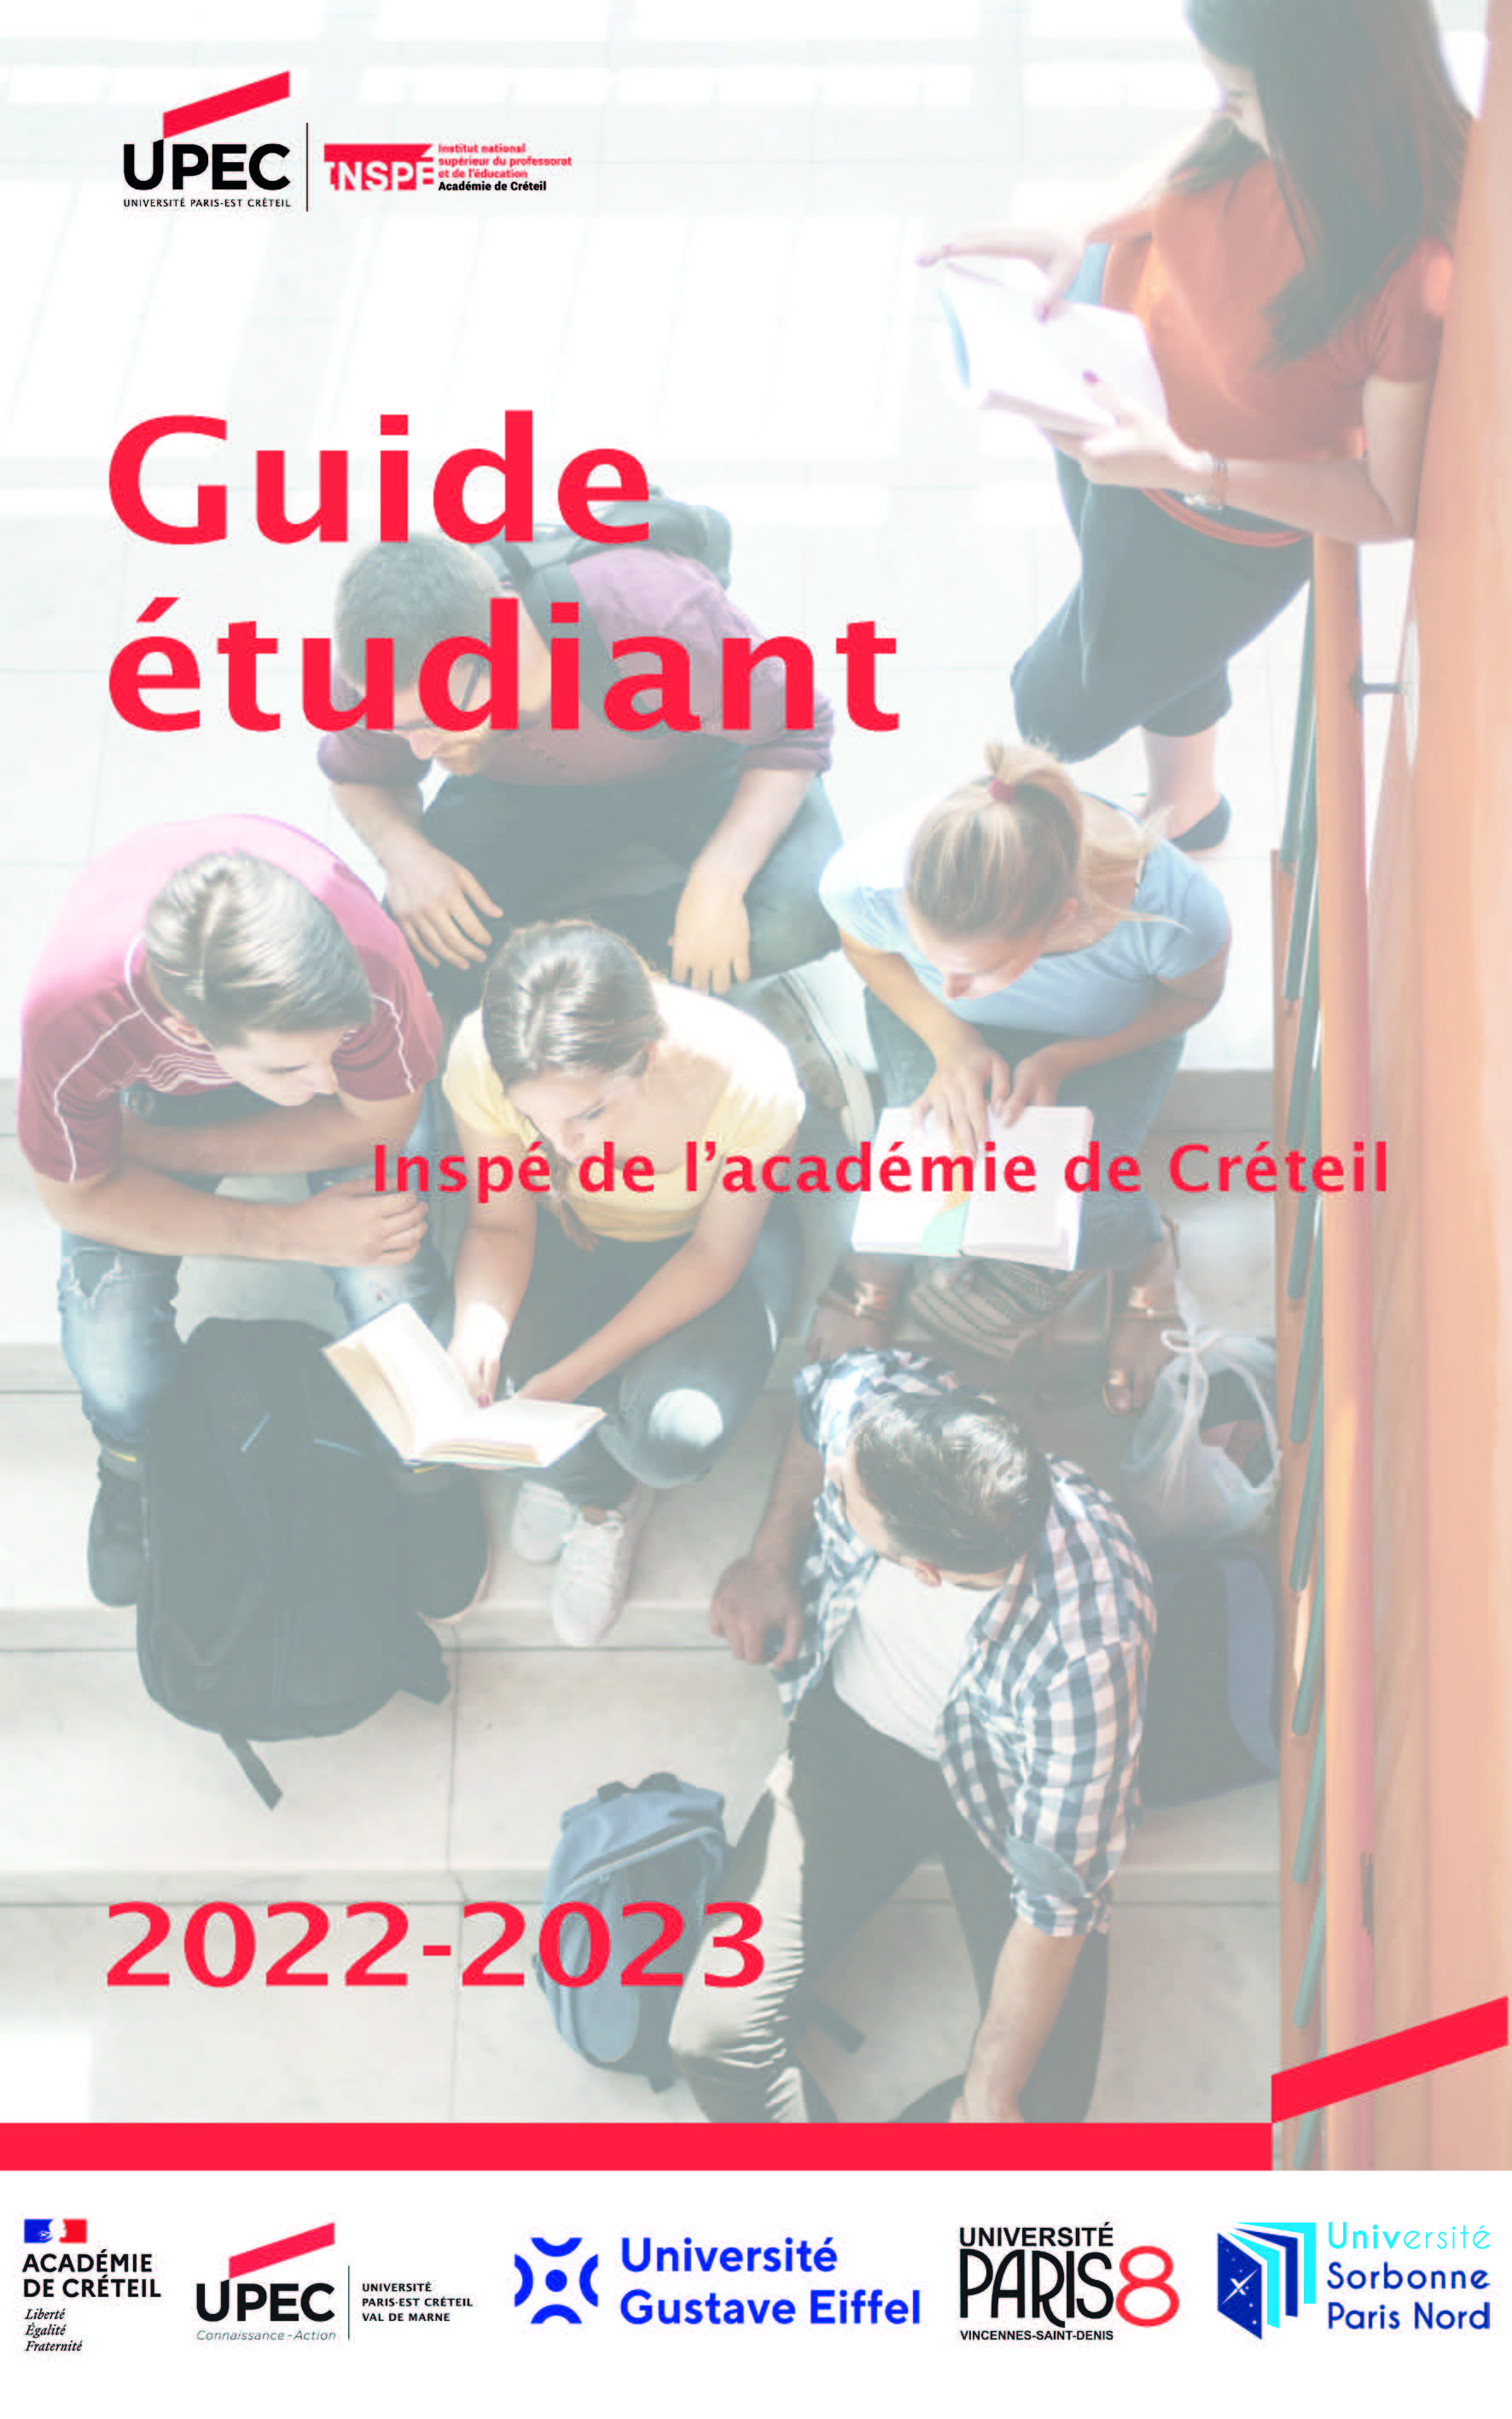 Guide étudiant Inspé 2022-2023